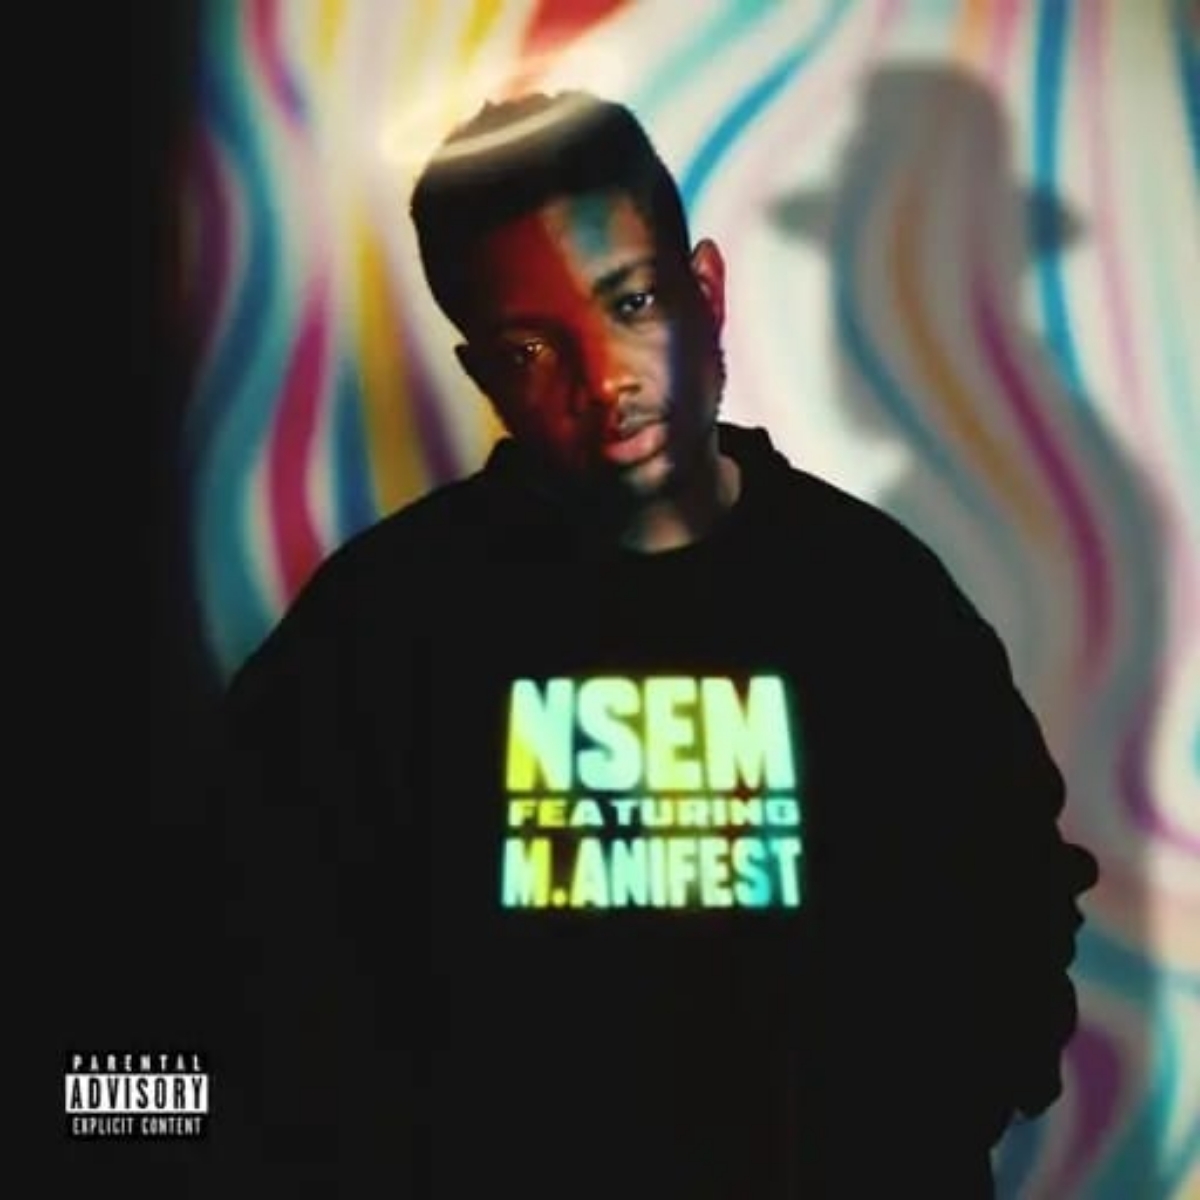 Bryan The Mensah – Nsem ft. M.anifest